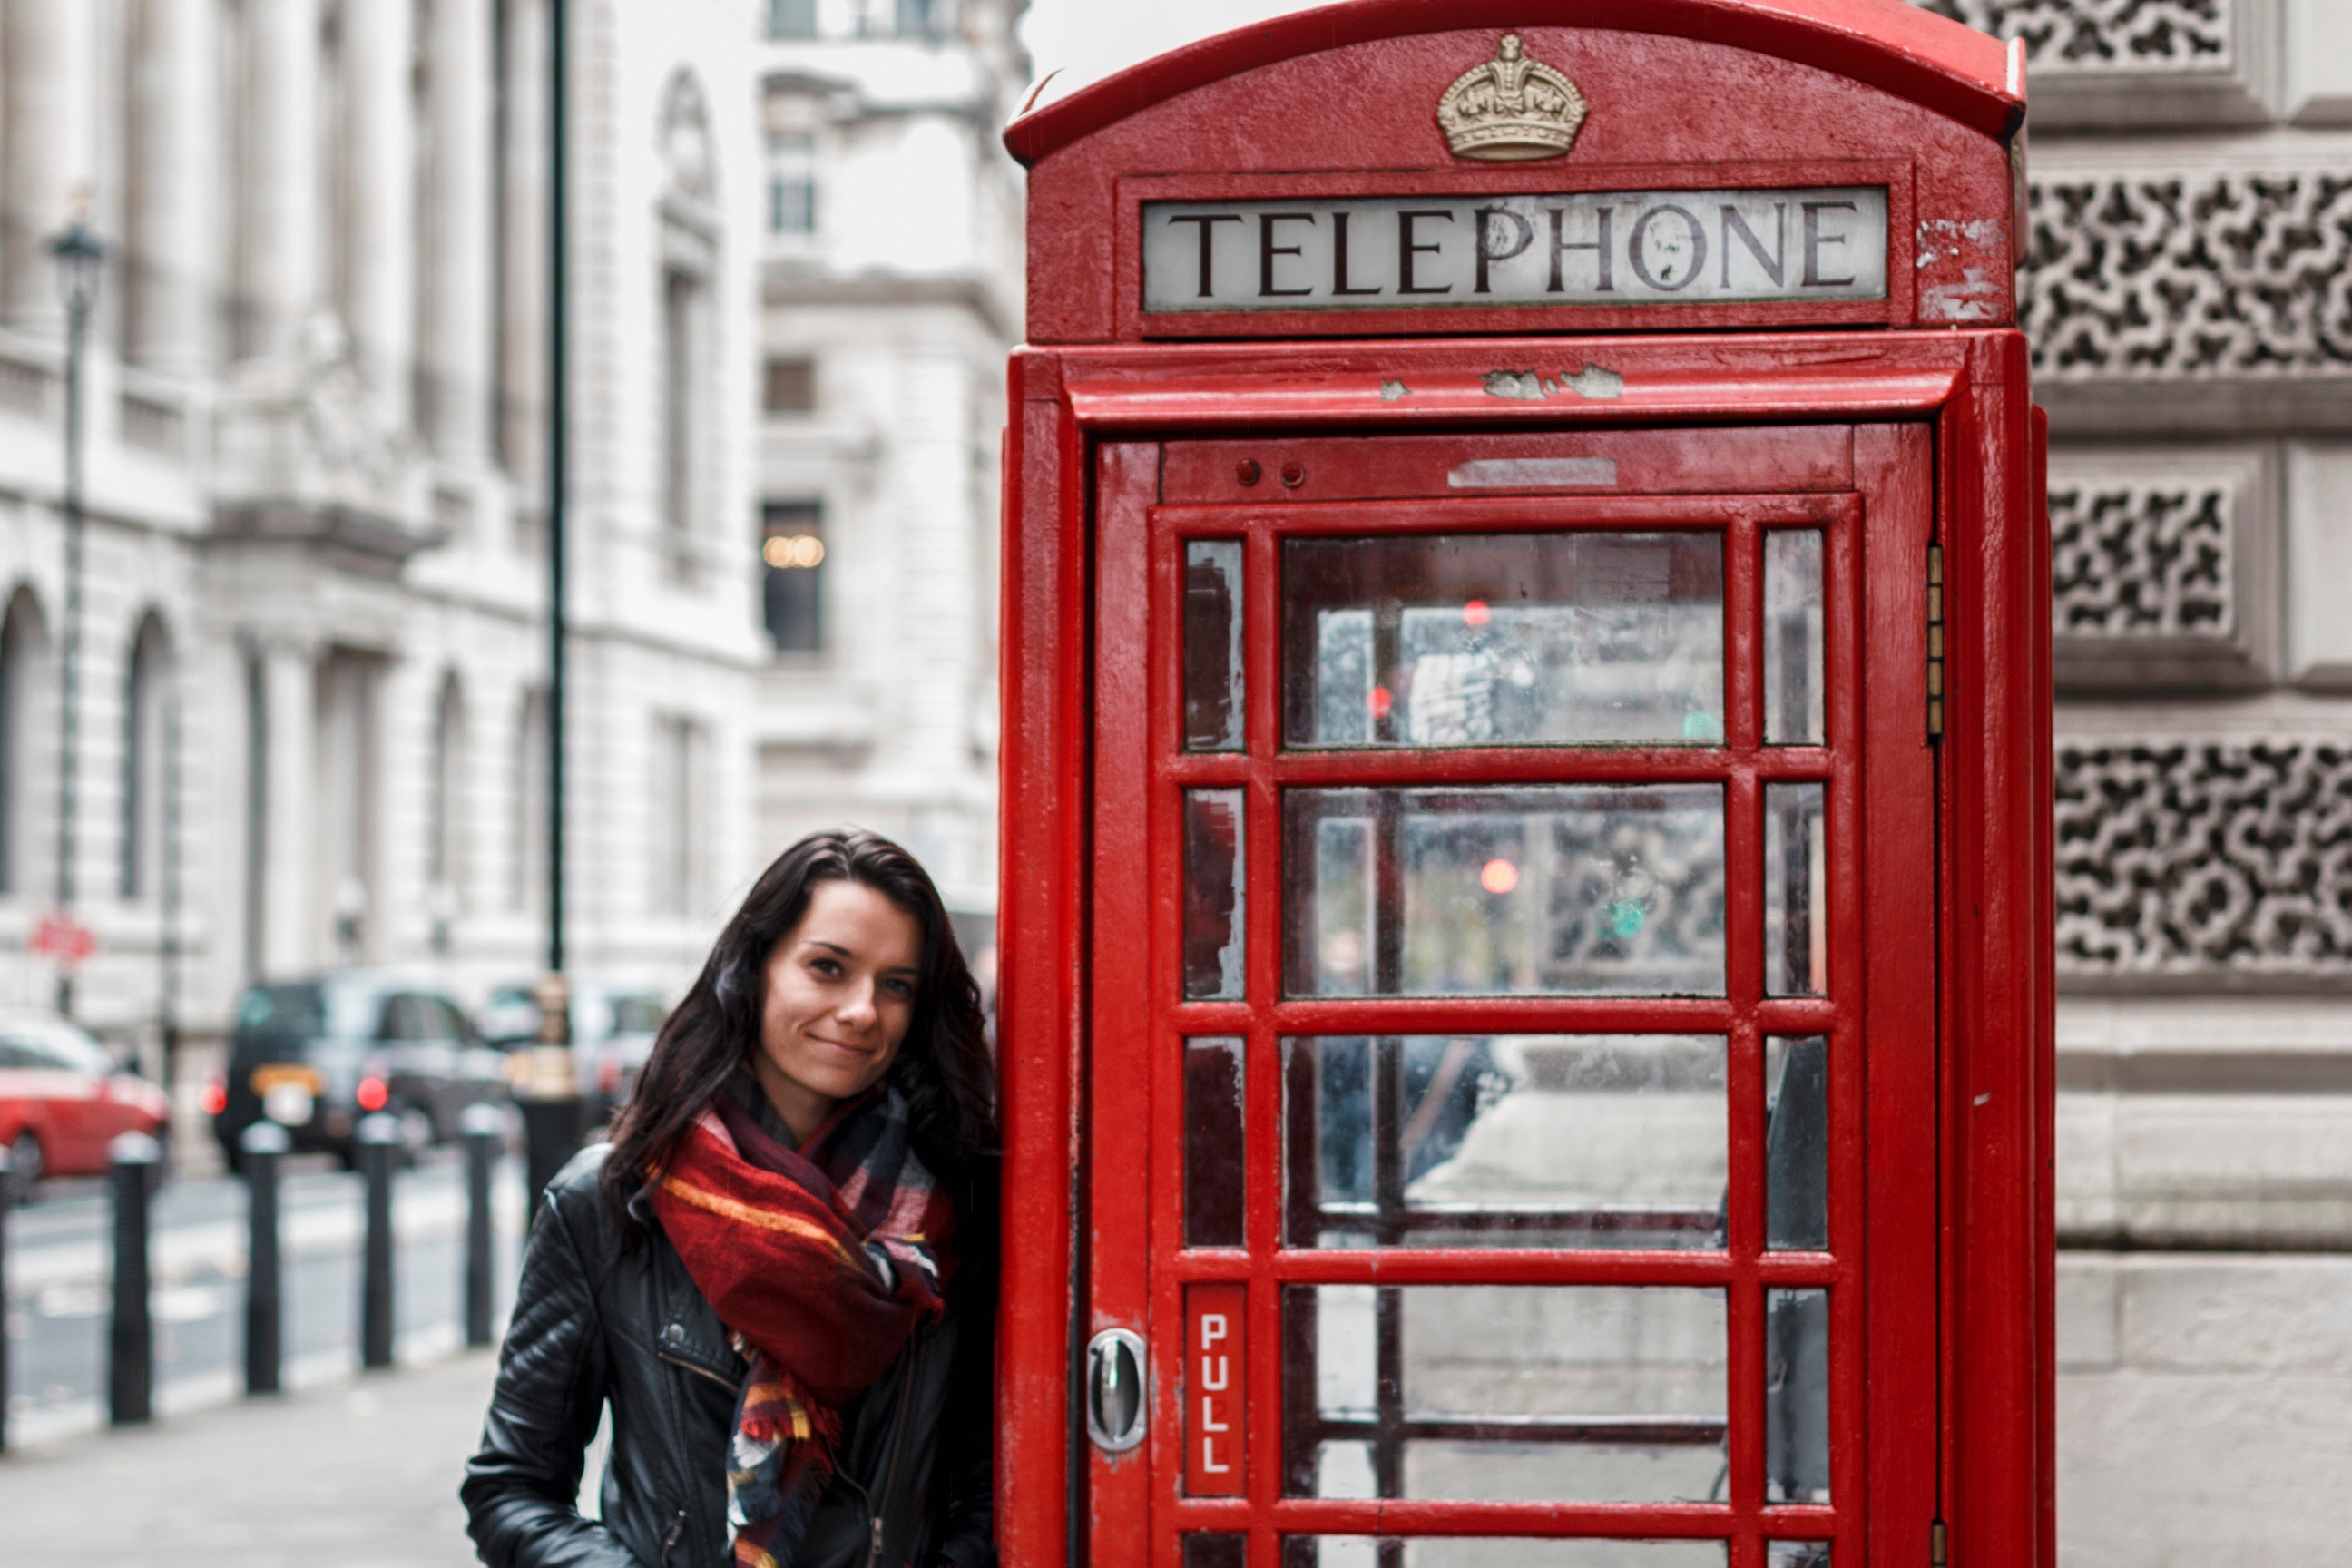 5 Great Photo-Taking Spots in London